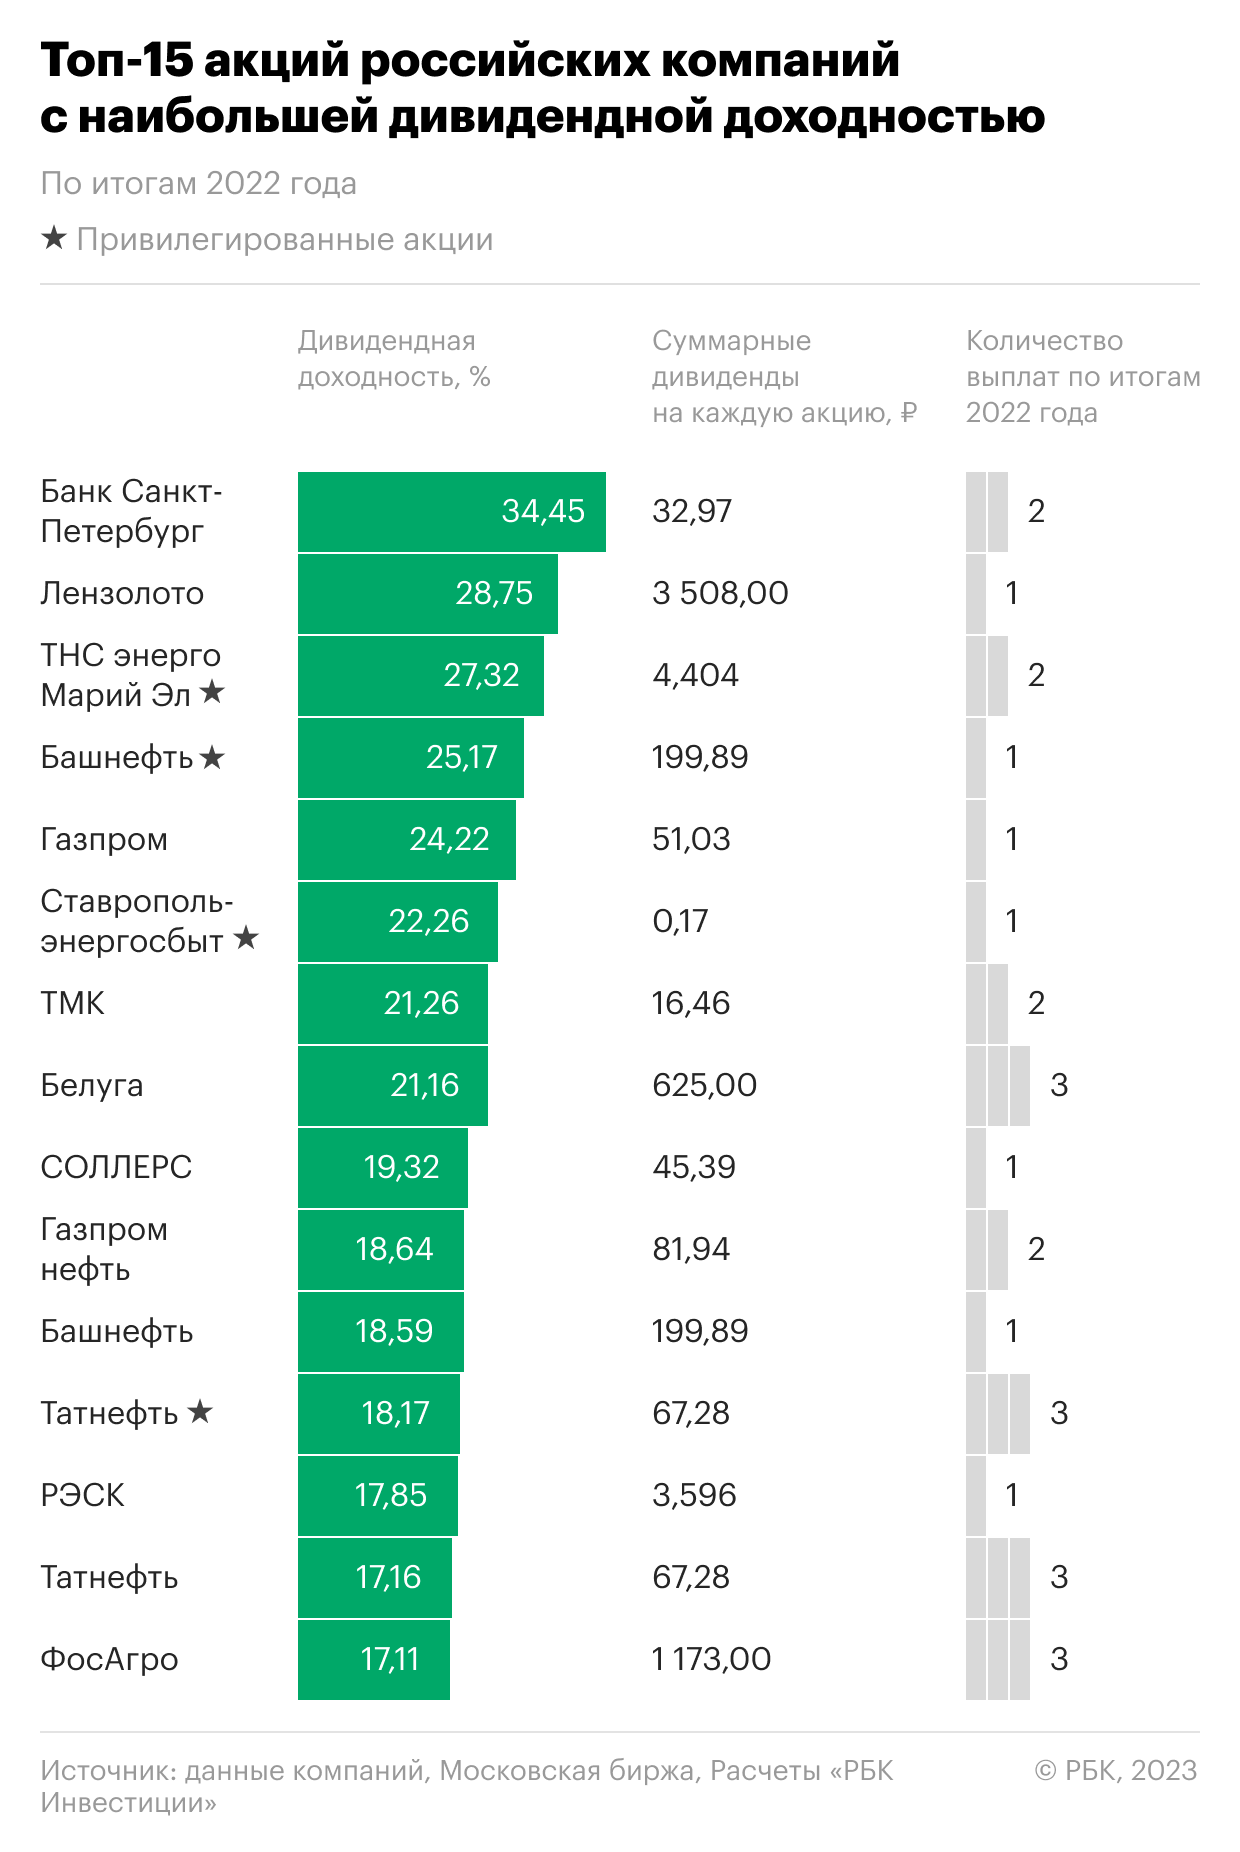 Топ-15 акций российских компаний с наибольшей дивидендной доходностью выплат по результатам 2022 года